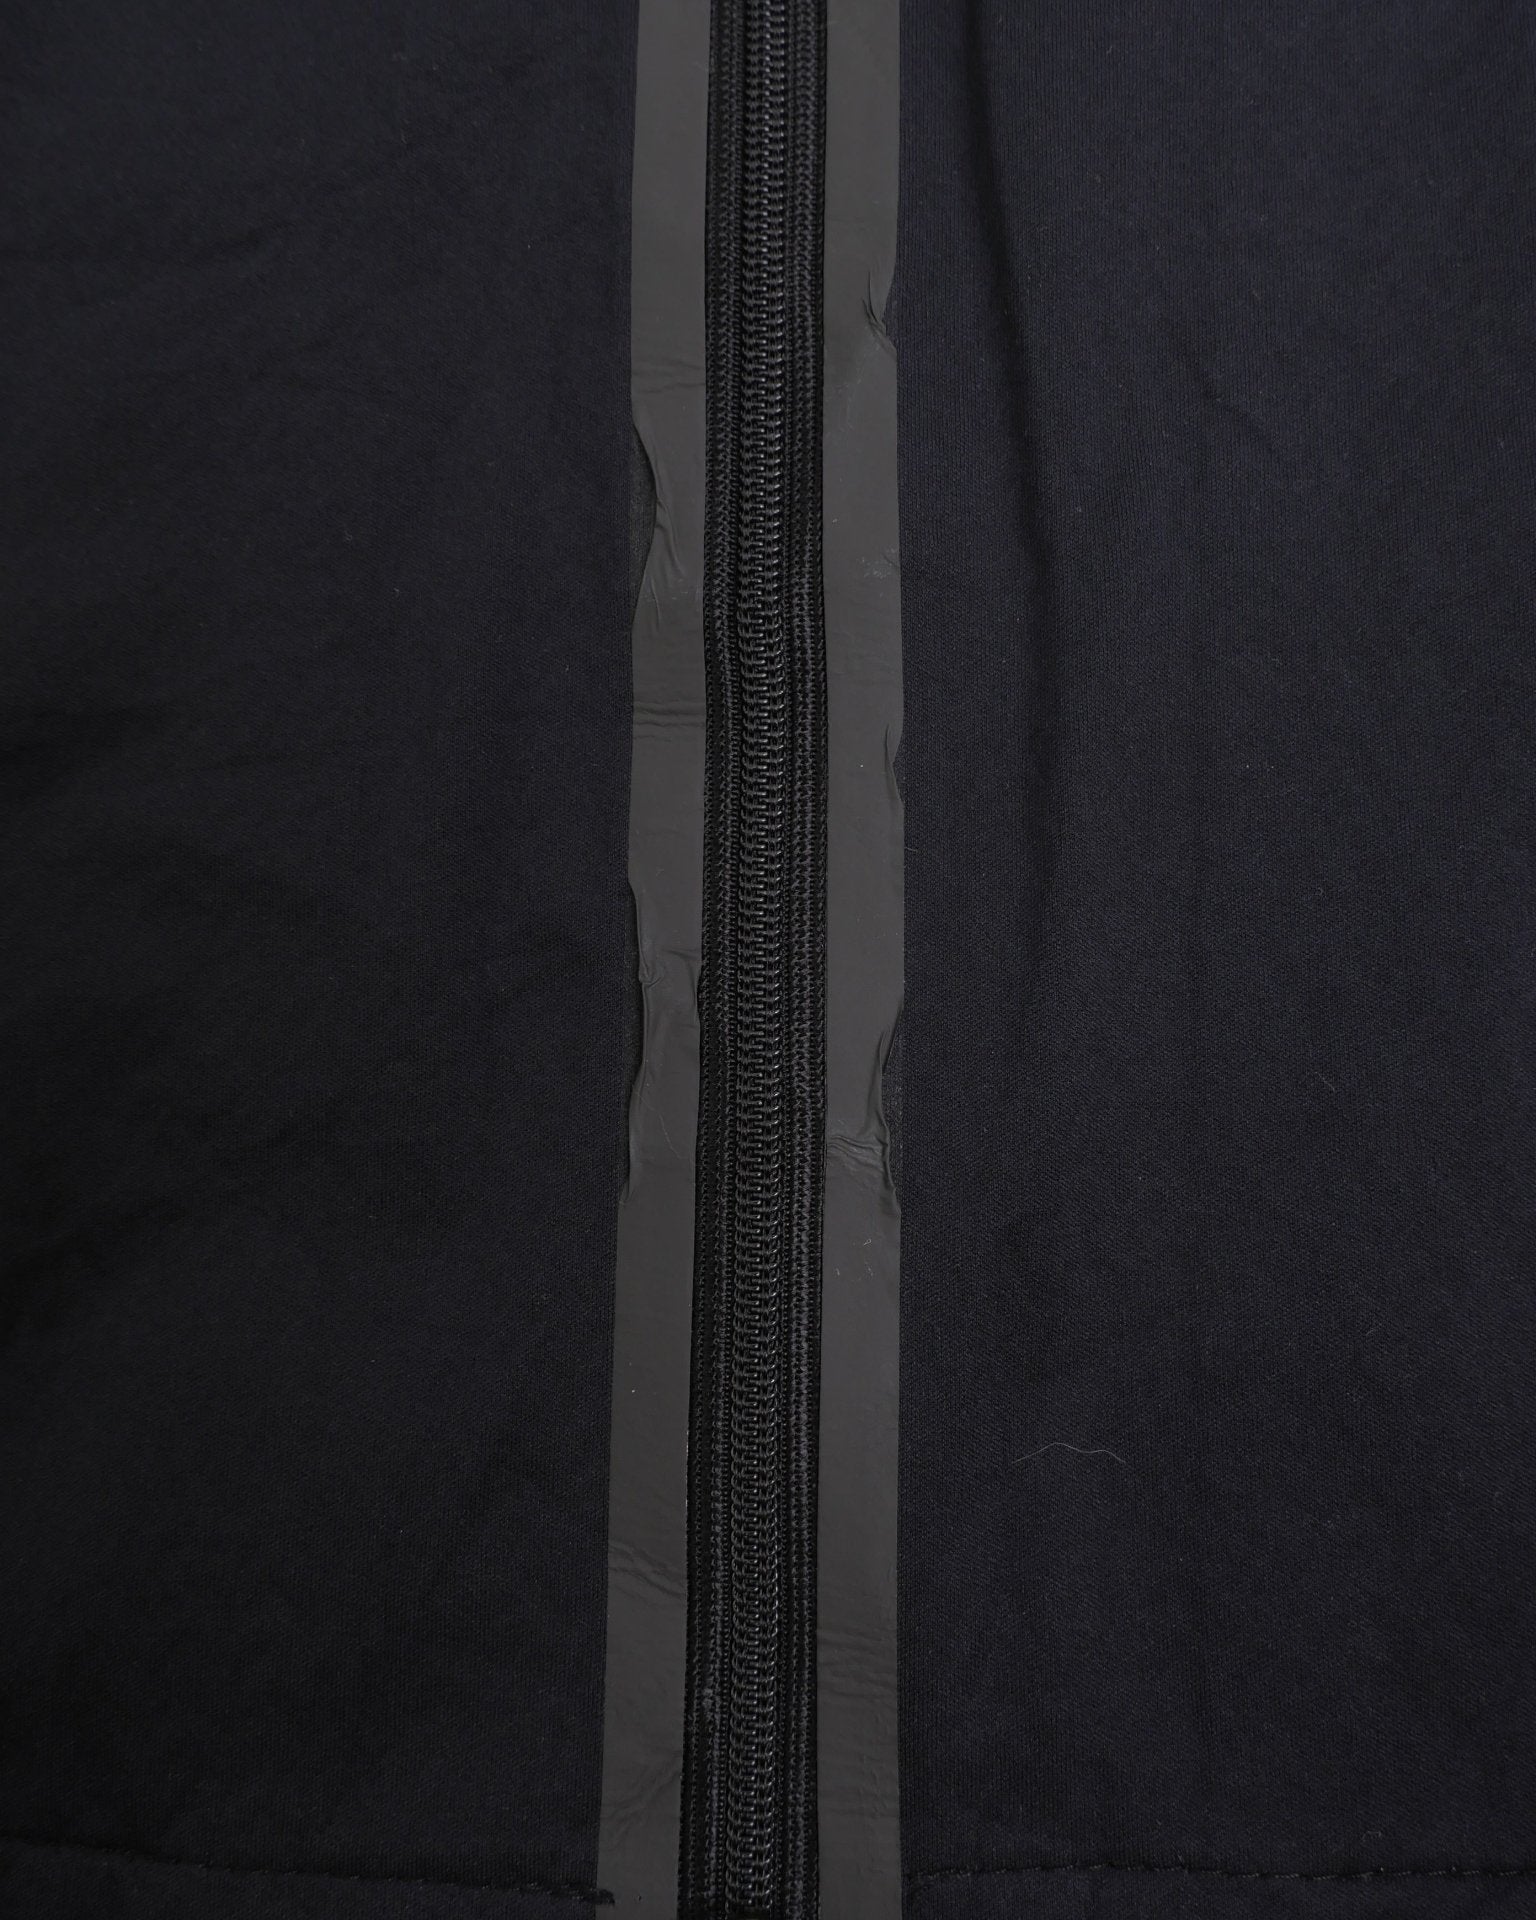 Nike basic black Vest Jacke - Peeces